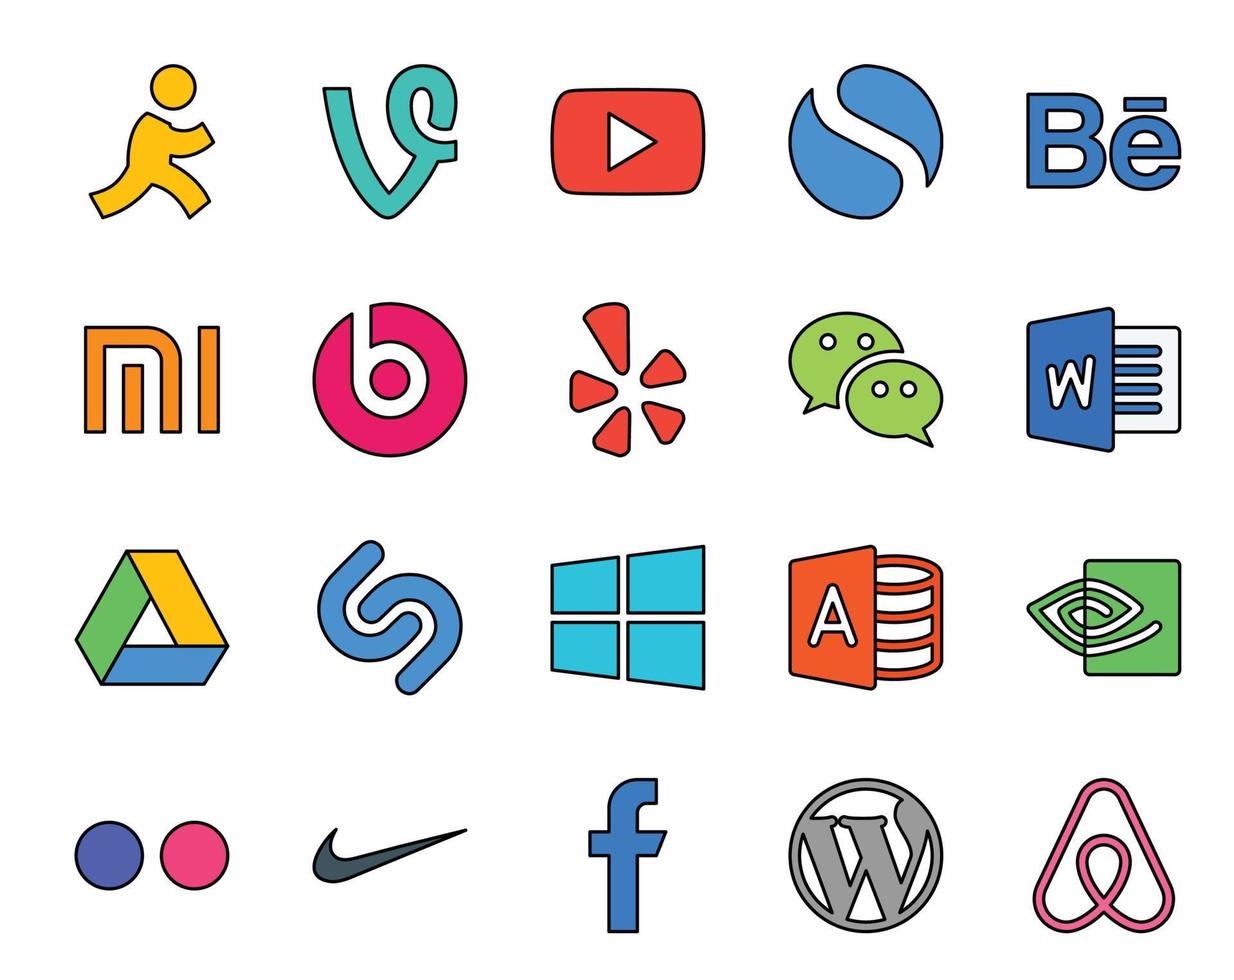 20 Symbolpakete für soziale Medien, einschließlich Flickr, Microsoft Access, Yelp, Windows, Google Drive vektor